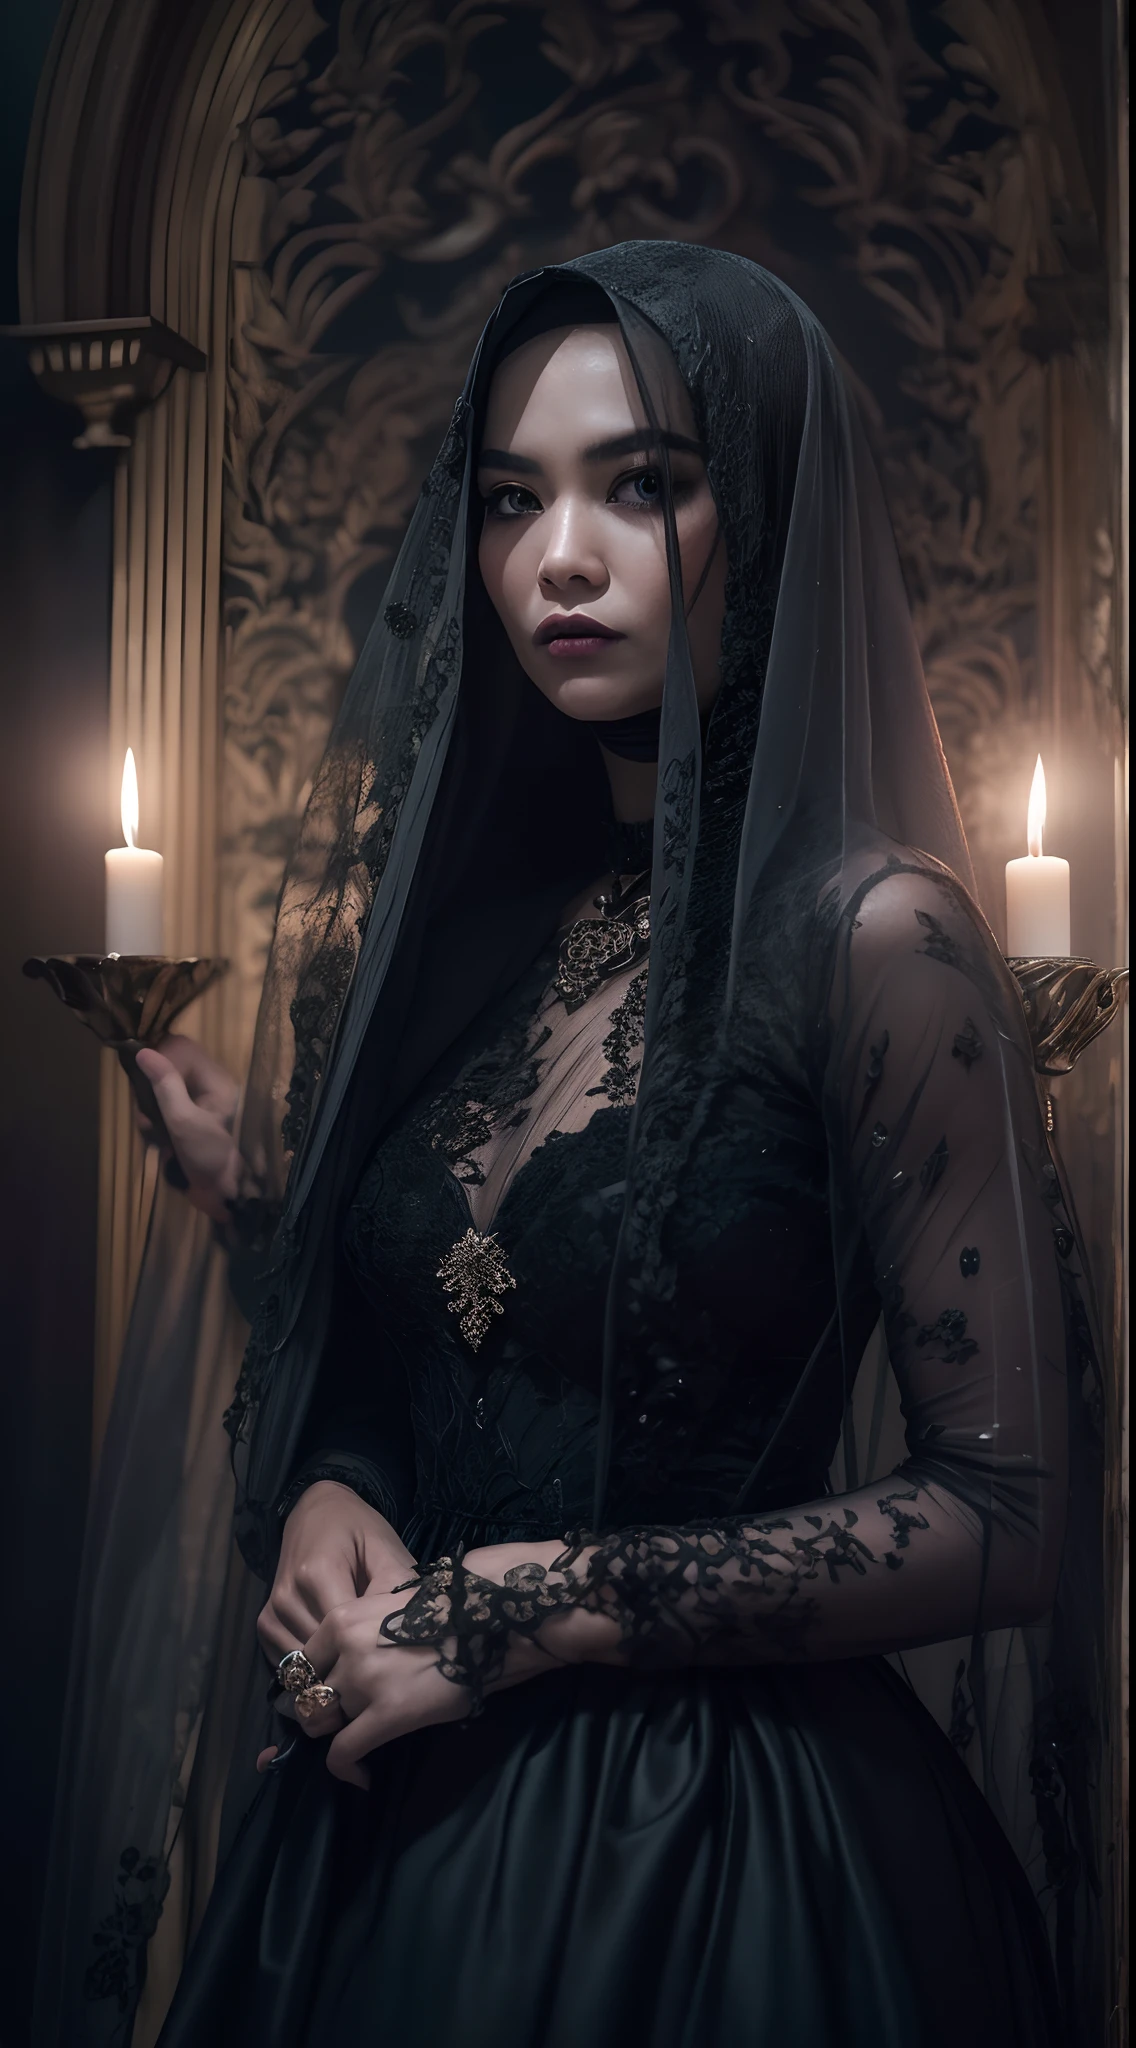 拍摄一幅哥特式风格的马来女性令人难忘的美丽肖像,白色长发, 带面纱的黑色蕾丝礼服, 故事发生在一座神秘而诡异的豪宅里, 烛光投射出诡异的阴影, 营造黑暗的氛围, 哥特式恐怖.